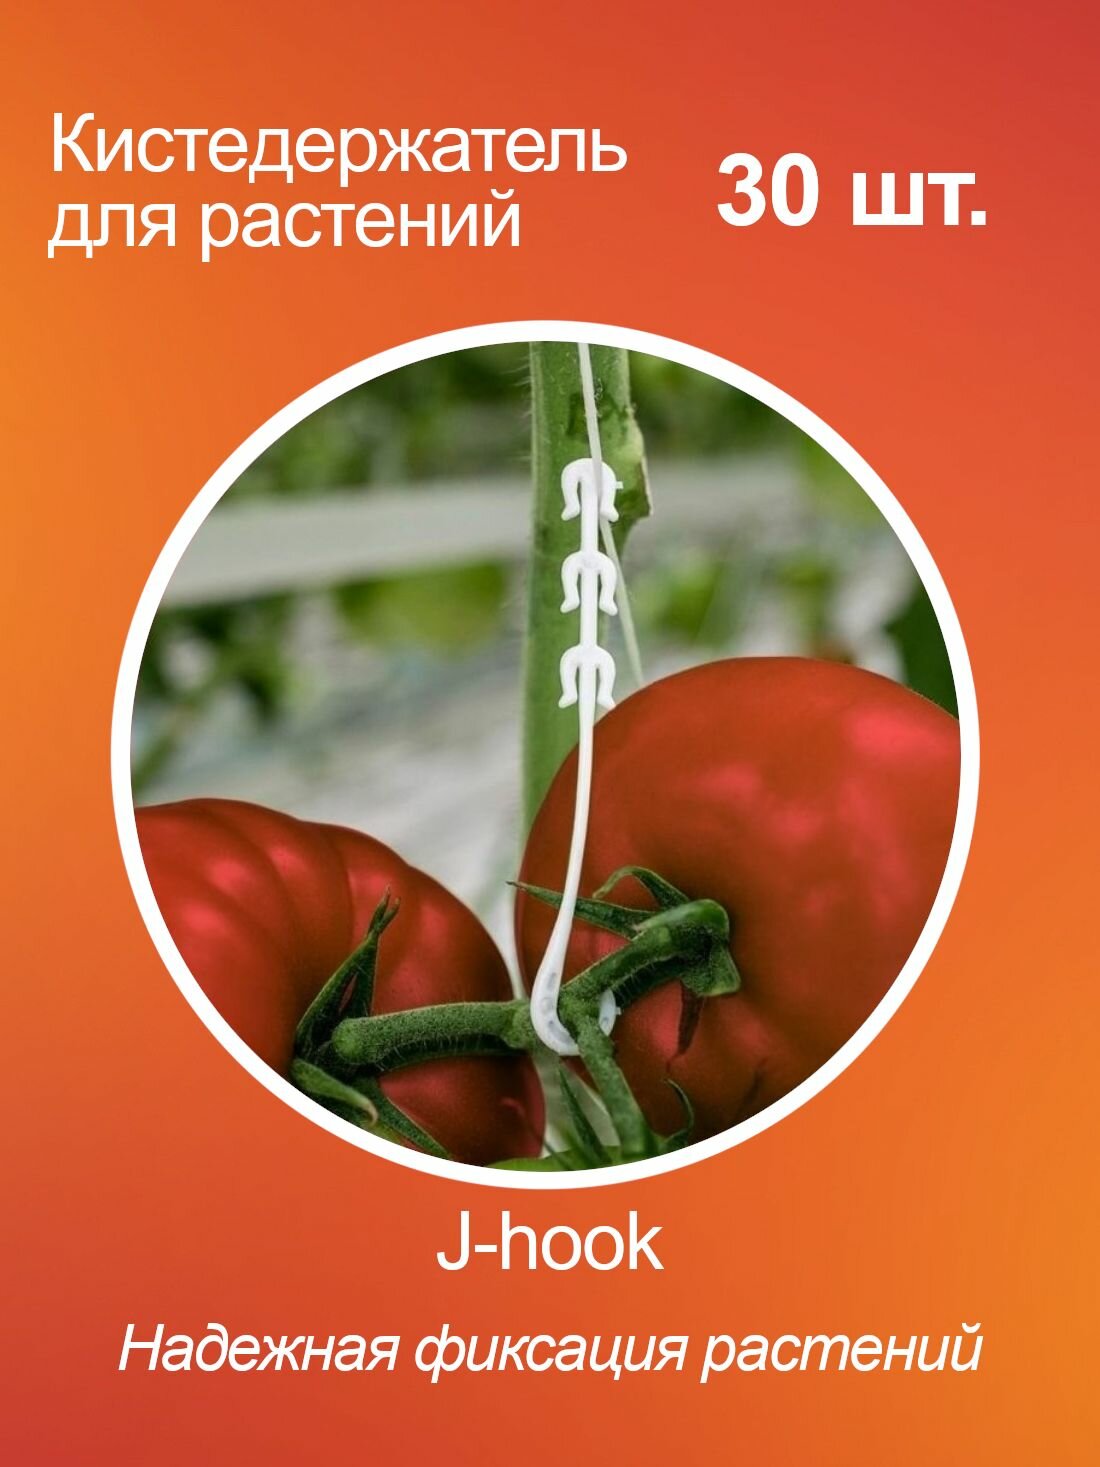 Кистедержатель для томатов помидор и растений J-hook, пластик, 30 шт.